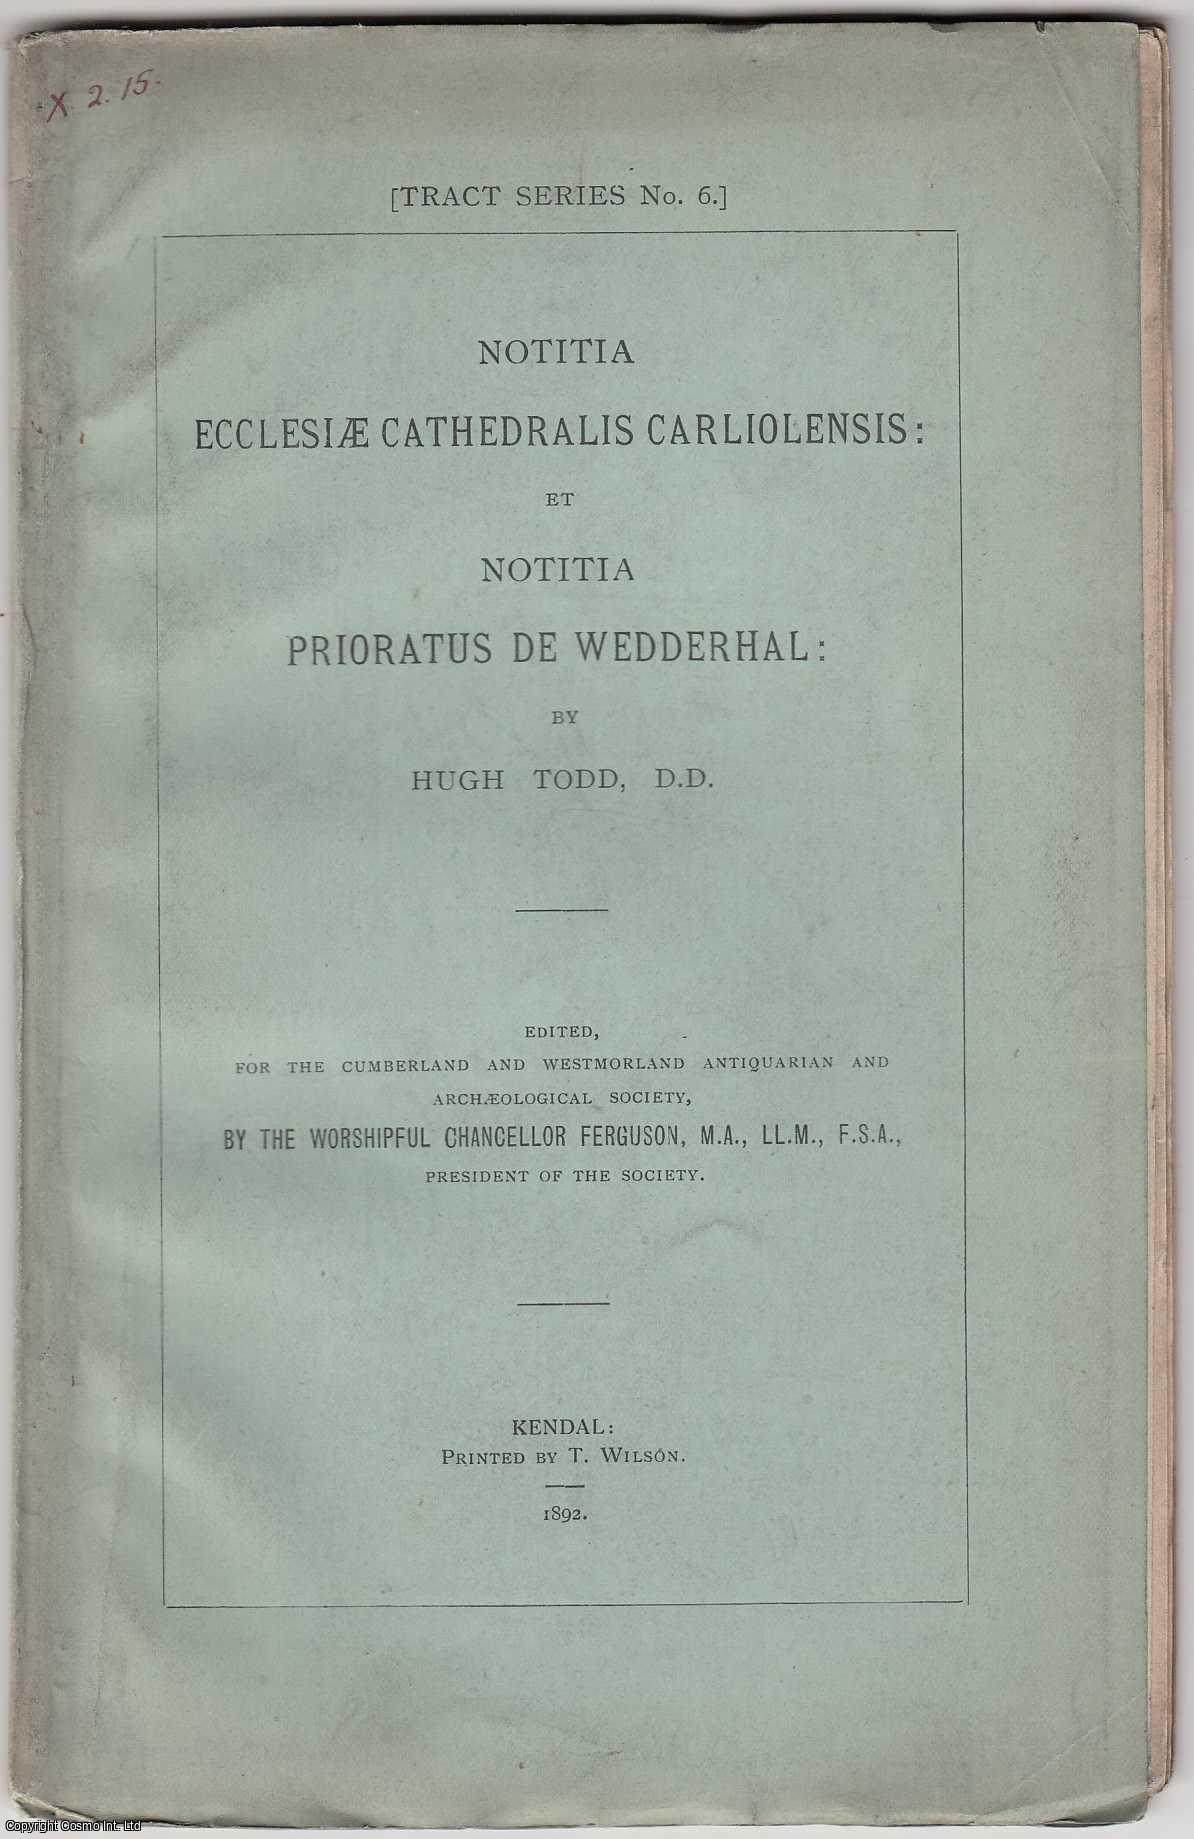 Hugh Todd, D.D. - [1892] Notitia Ecclesiae Cathedralis Carliolensis: et Notitia Prioratus de Wedderhal.